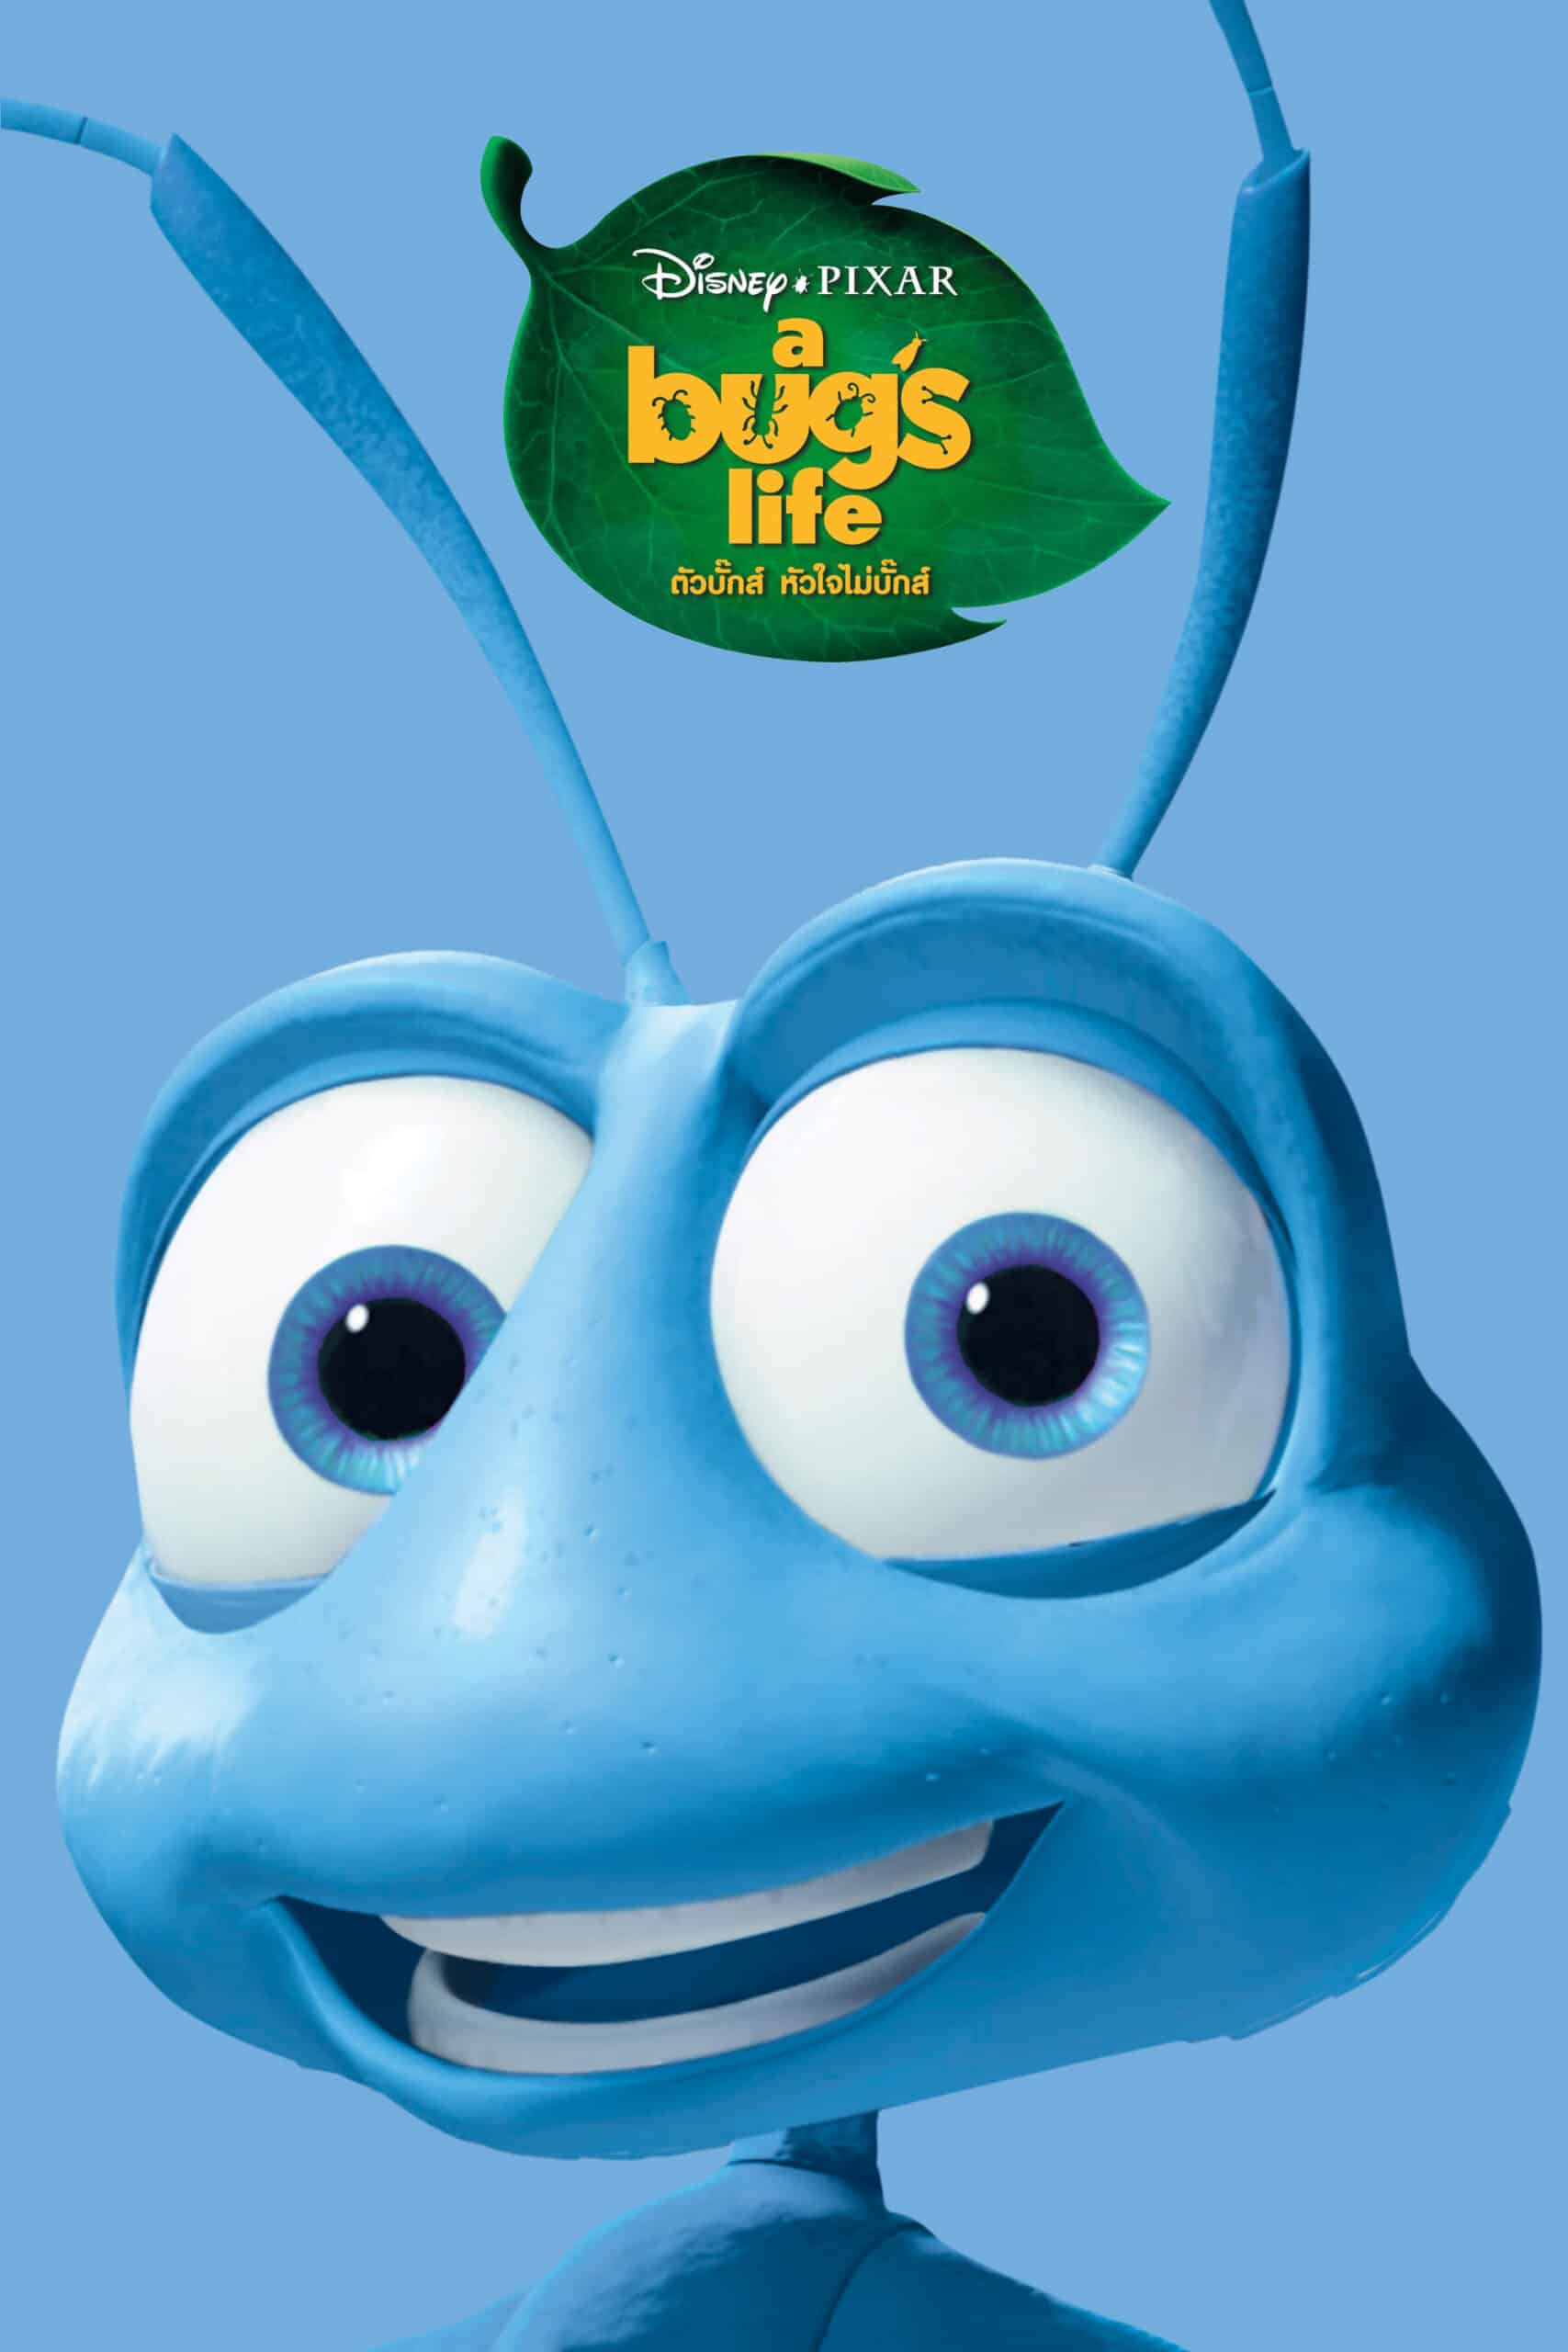 ดูหนังออนไลน์ฟรี A Bug’s Life 1998 ตัวบั๊กส์ หัวใจไม่บั๊กส์